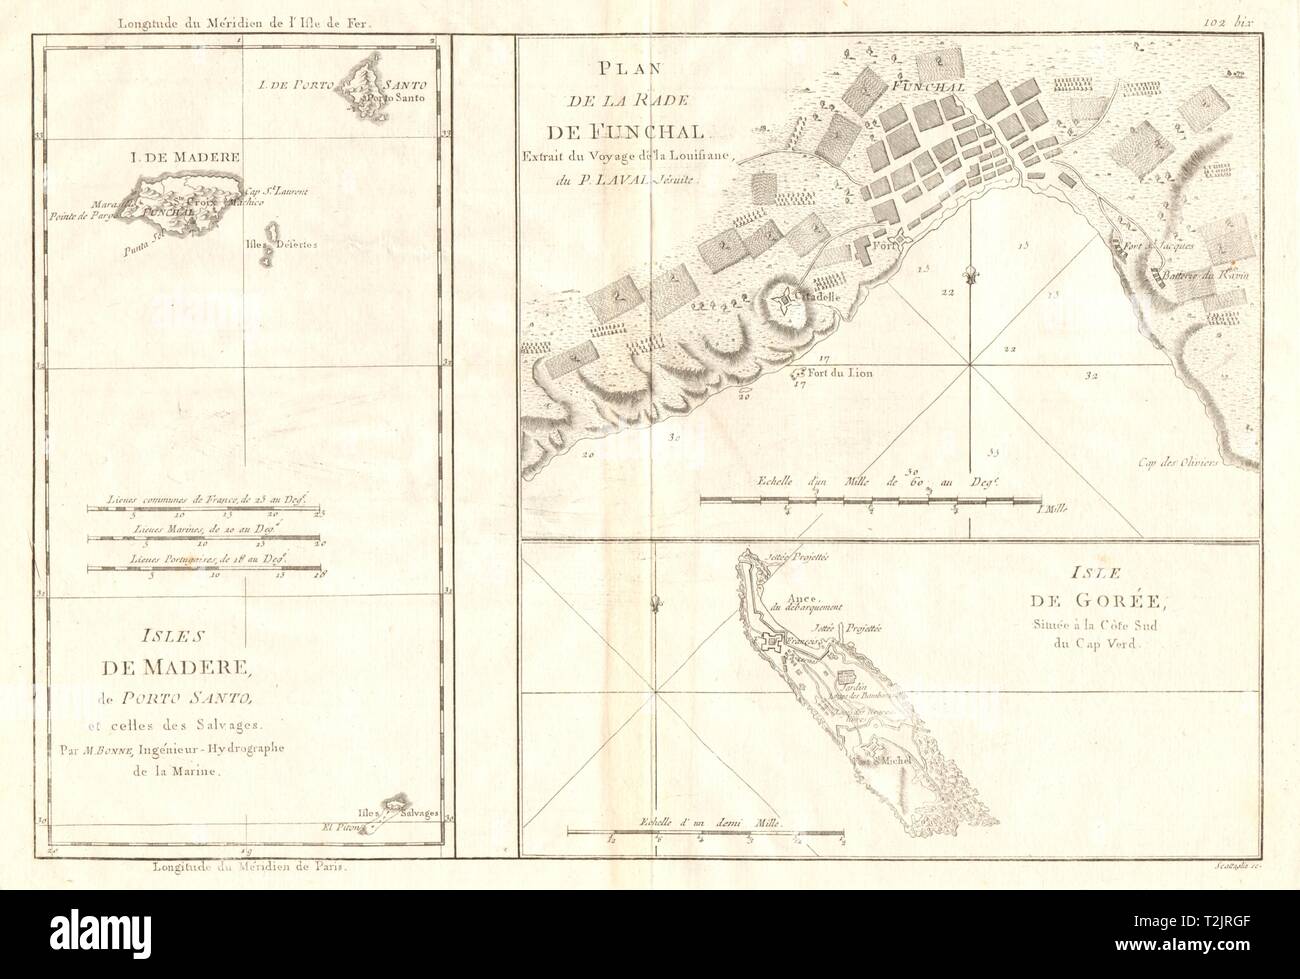 Isles de Madere, Porto Santo & Gorée. Port de Funchal. Madère. BONNE CARTE 1790 Banque D'Images